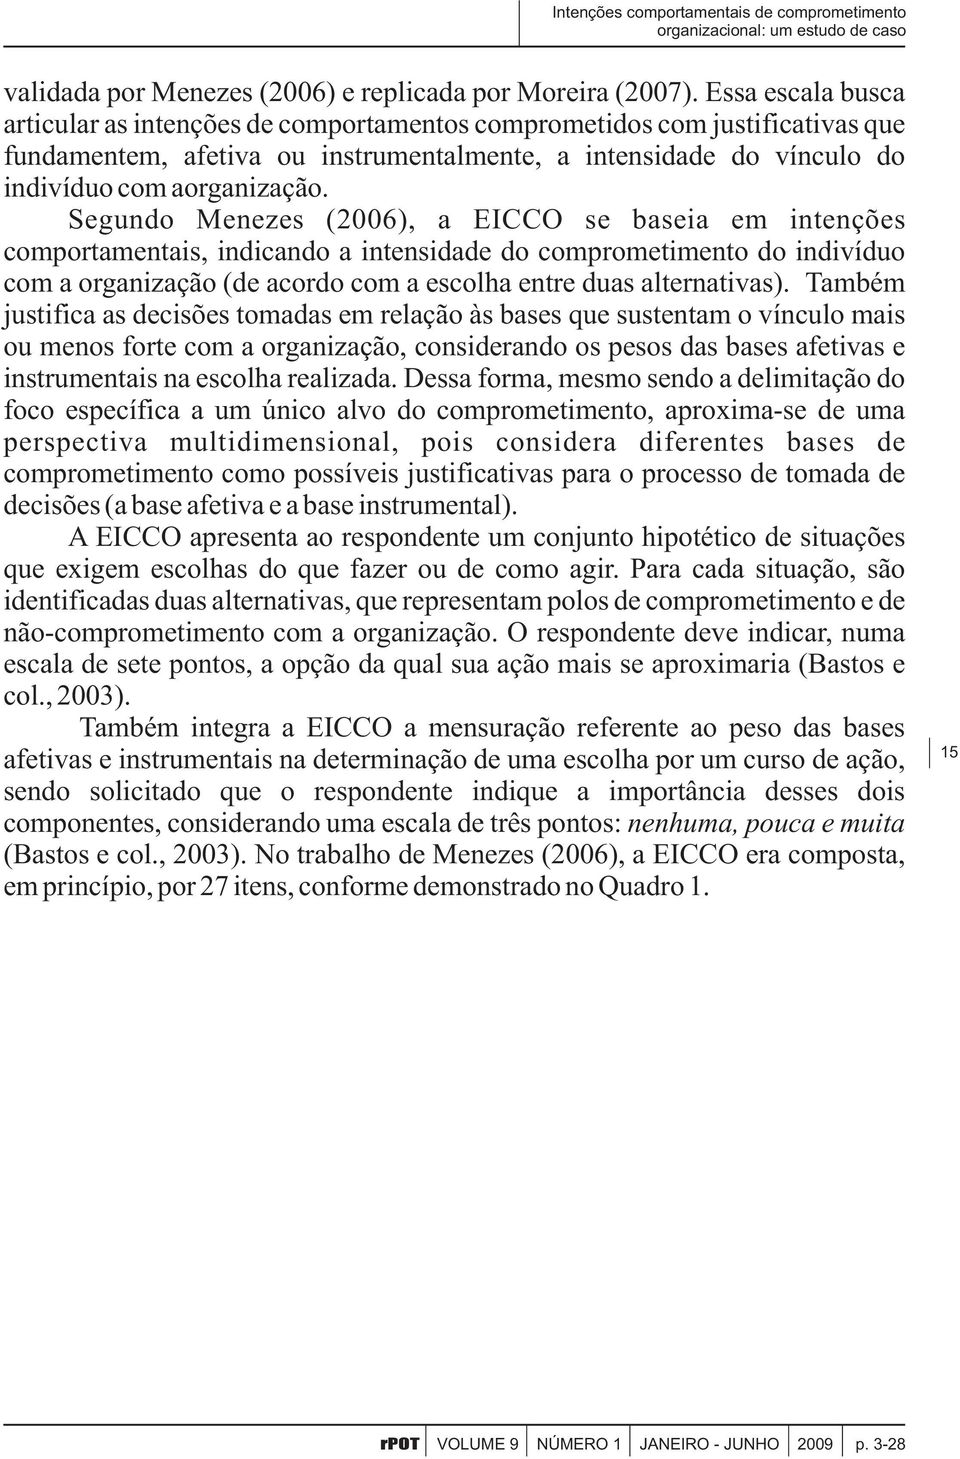 Segundo Menezes (2006), a EICCO se baseia em intenções comportamentais, indicando a intensidade do comprometimento do indivíduo com a organização (de acordo com a escolha entre duas alternativas).